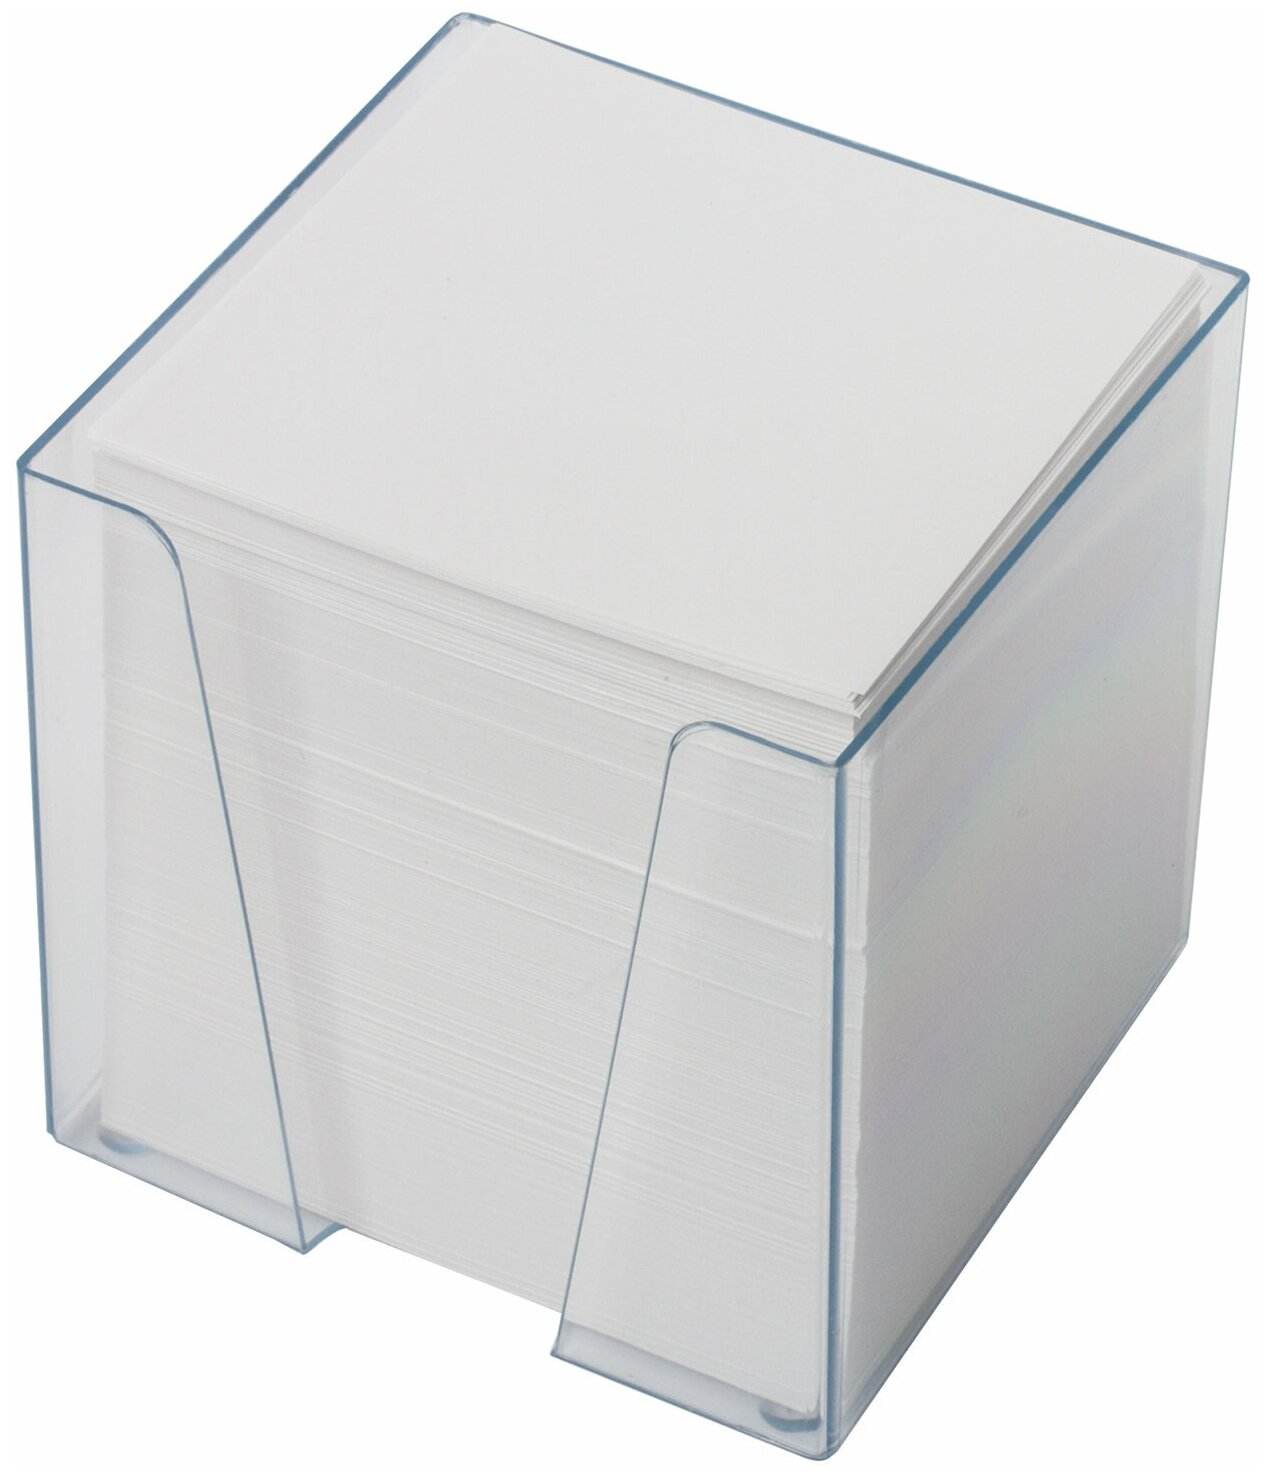 Блок Brauberg для записей в подставке прозрачной, куб 9х9х9 см, белый, белизна 95-98%, 122223